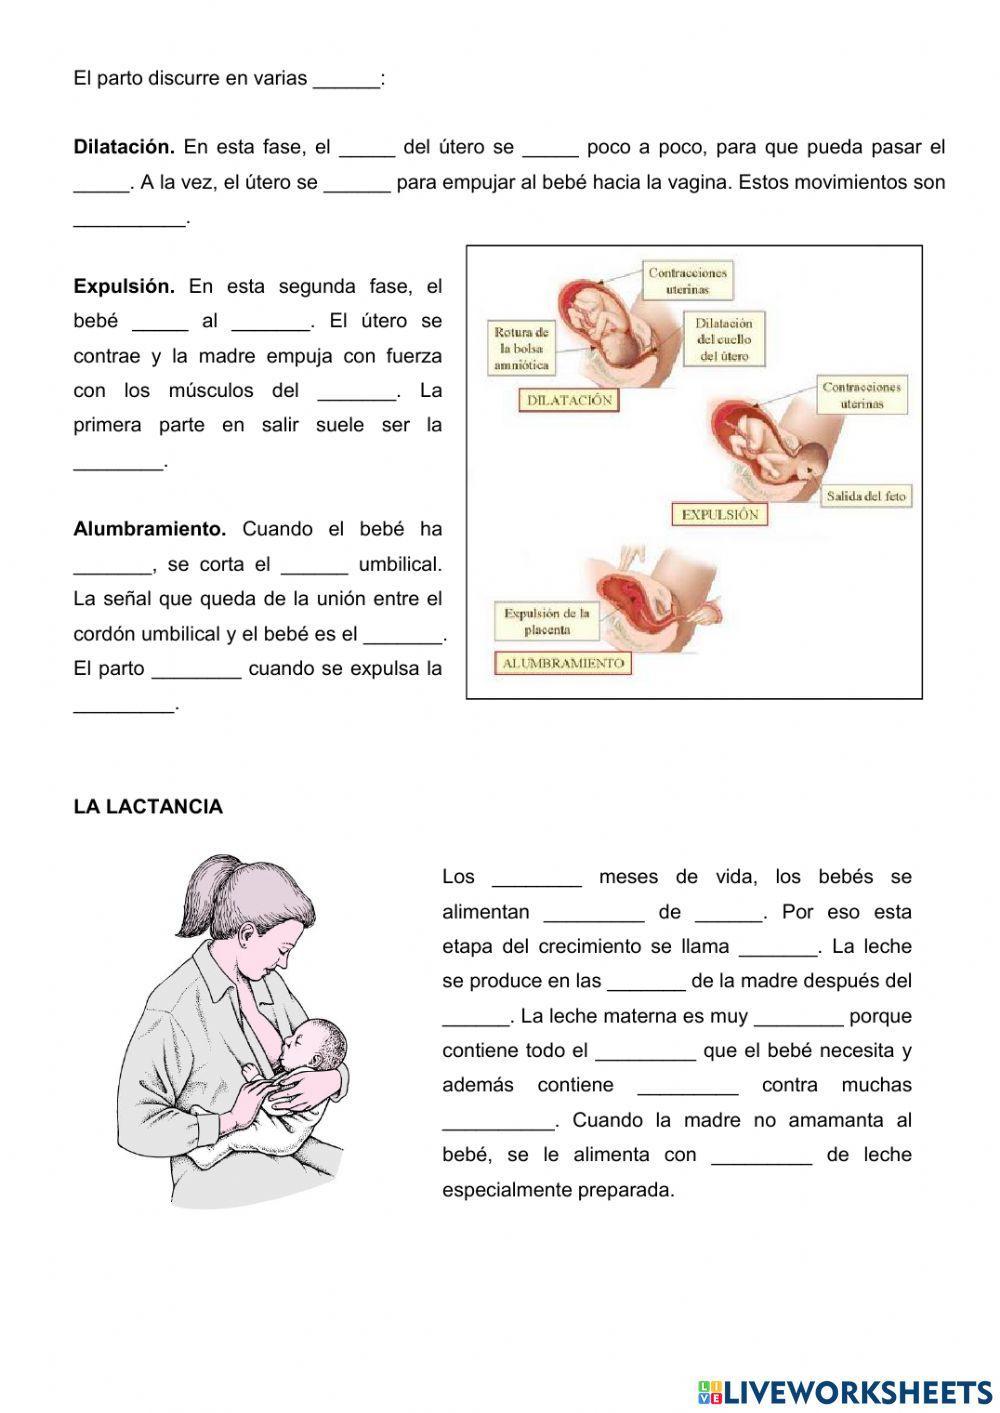 El embarazo, el parto y la lactancia.